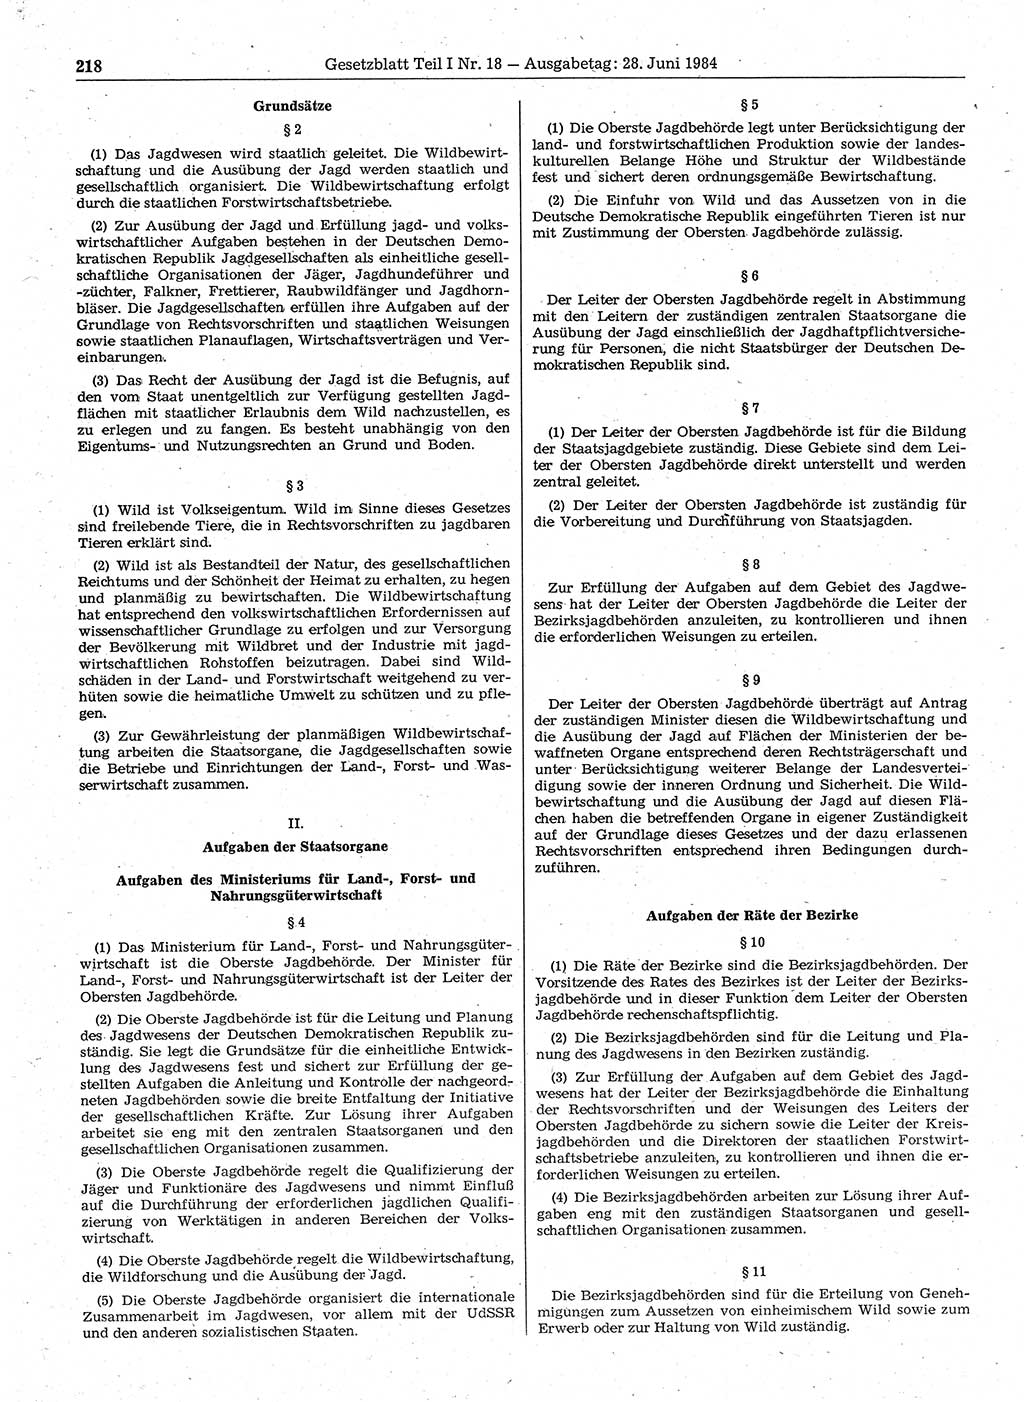 Gesetzblatt (GBl.) der Deutschen Demokratischen Republik (DDR) Teil Ⅰ 1984, Seite 218 (GBl. DDR Ⅰ 1984, S. 218)